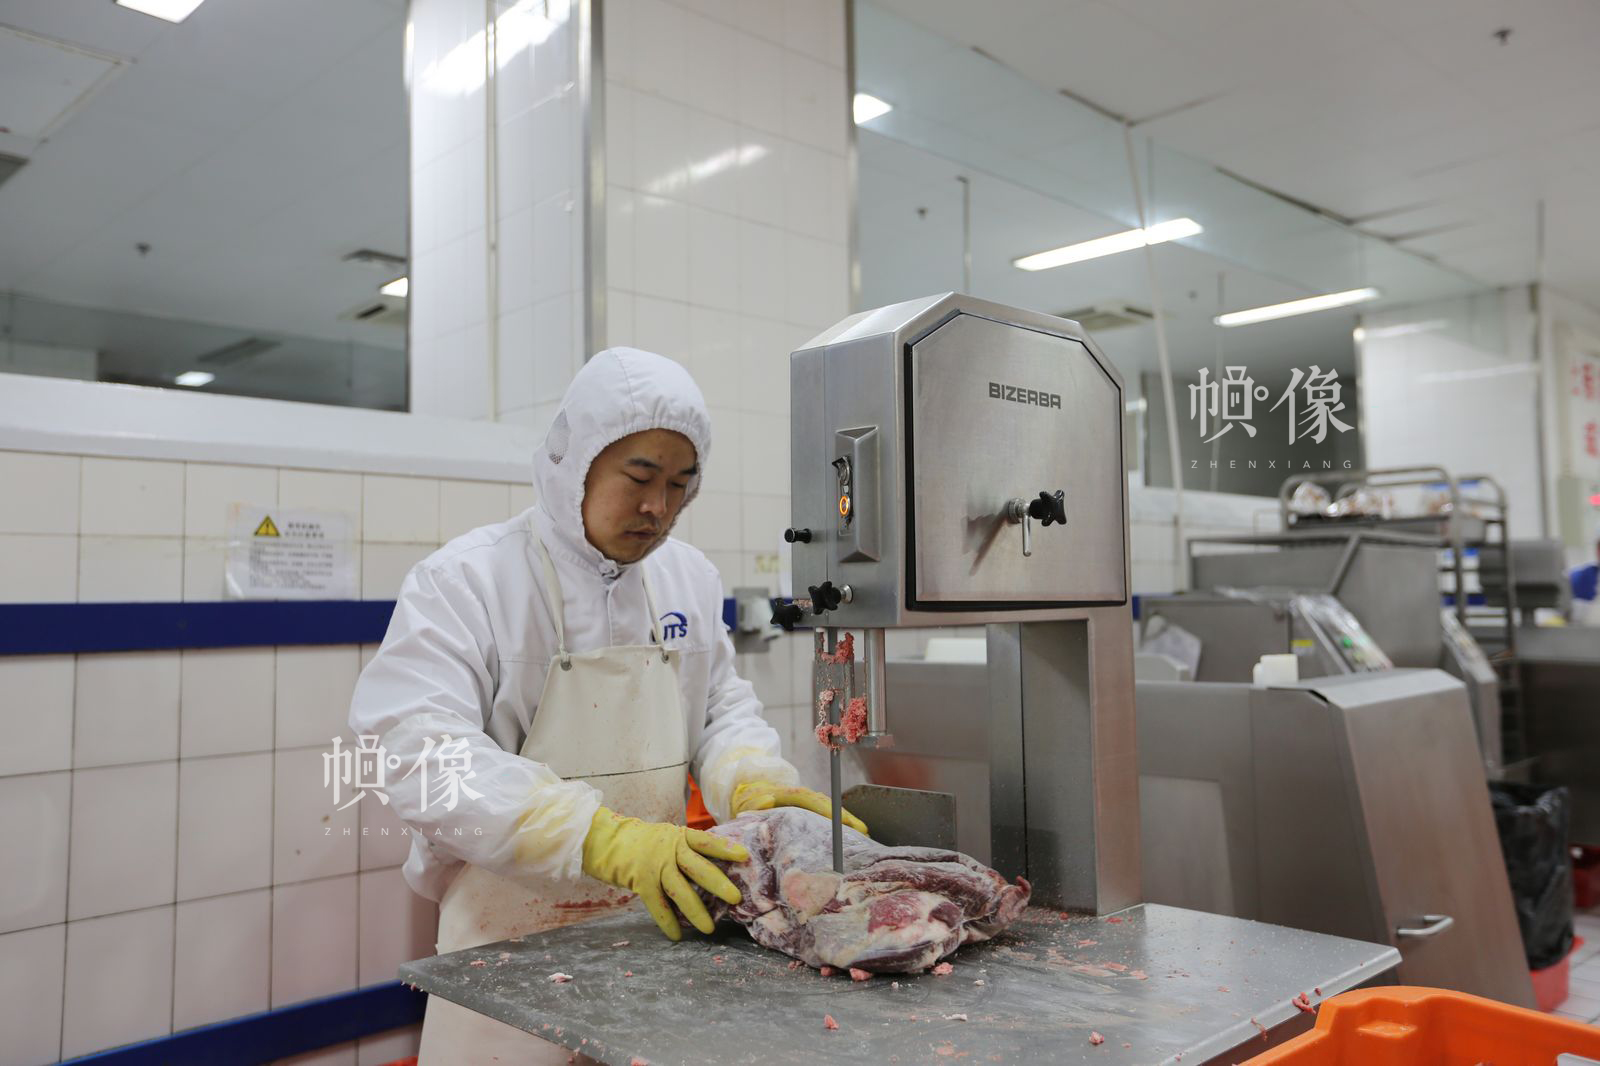 工人用机器处理肉类食品。中国网记者 吴闻达 摄